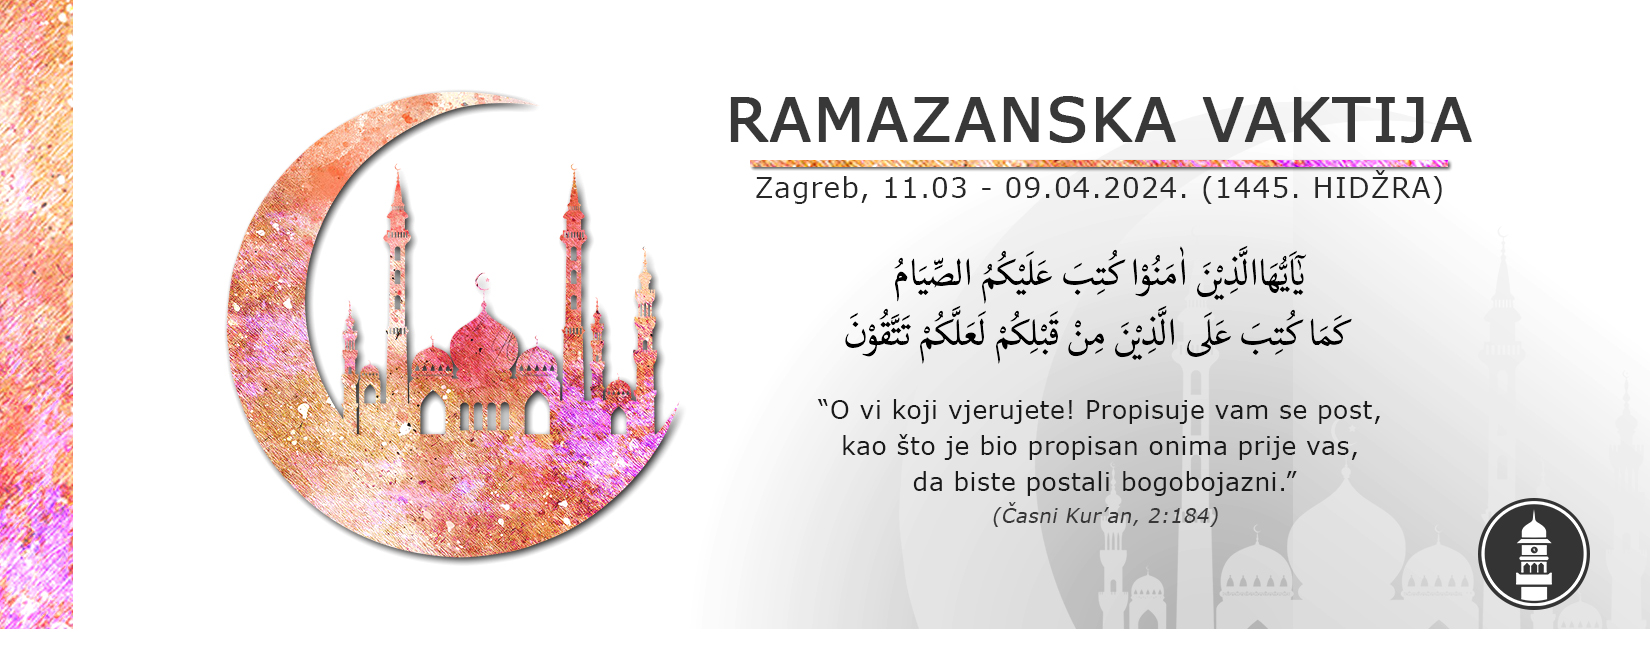 Ramazanska vaktija 2024